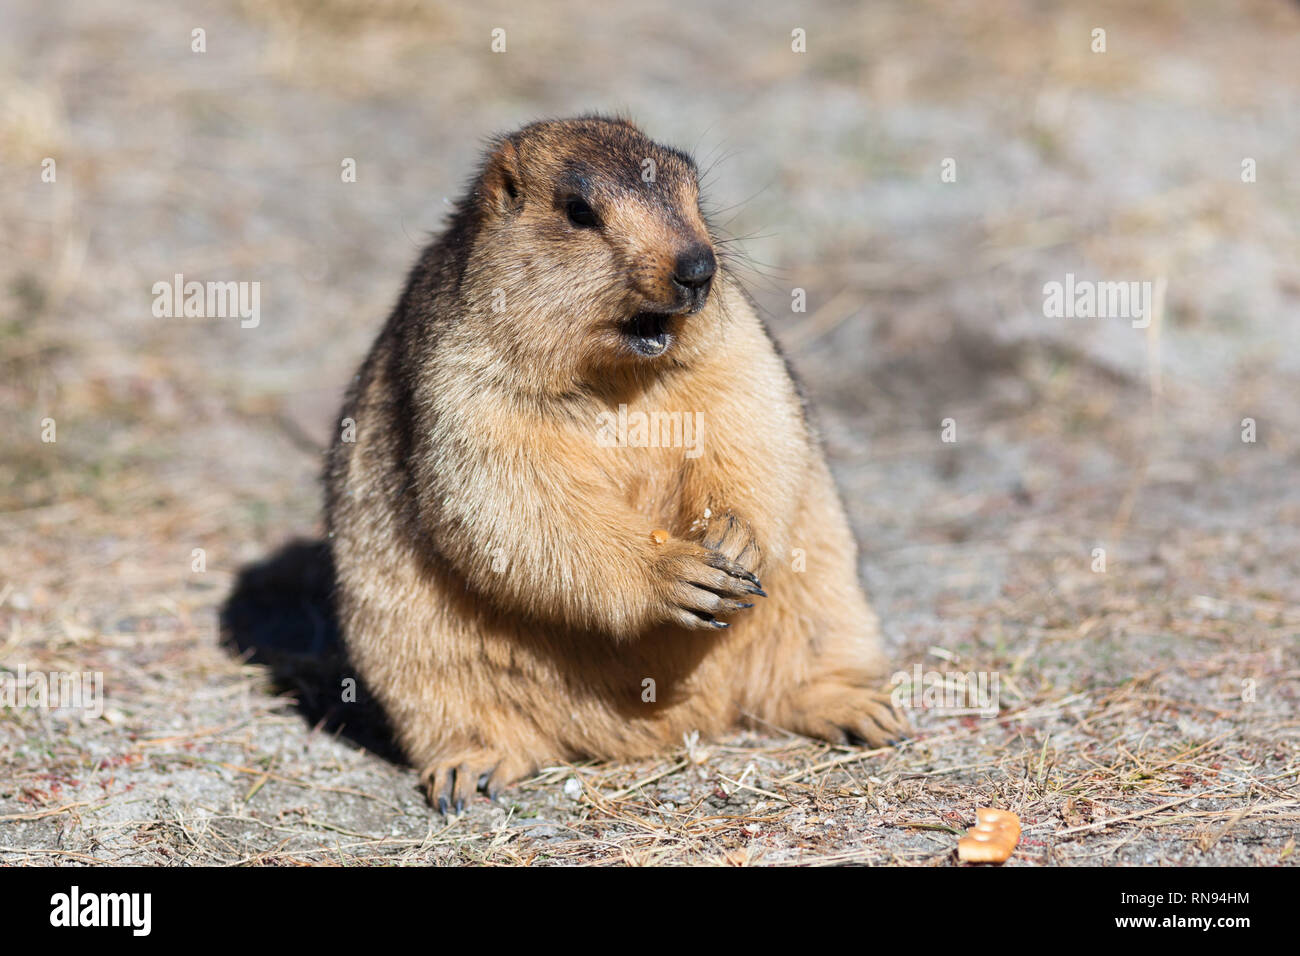 Turismo irresponsabile: marmotta mangiare i biscotti portati dai turisti nonostante la scheda nelle vicinanze per chiedere di non nutrire gli animali selvatici, Ladakh, India Foto Stock